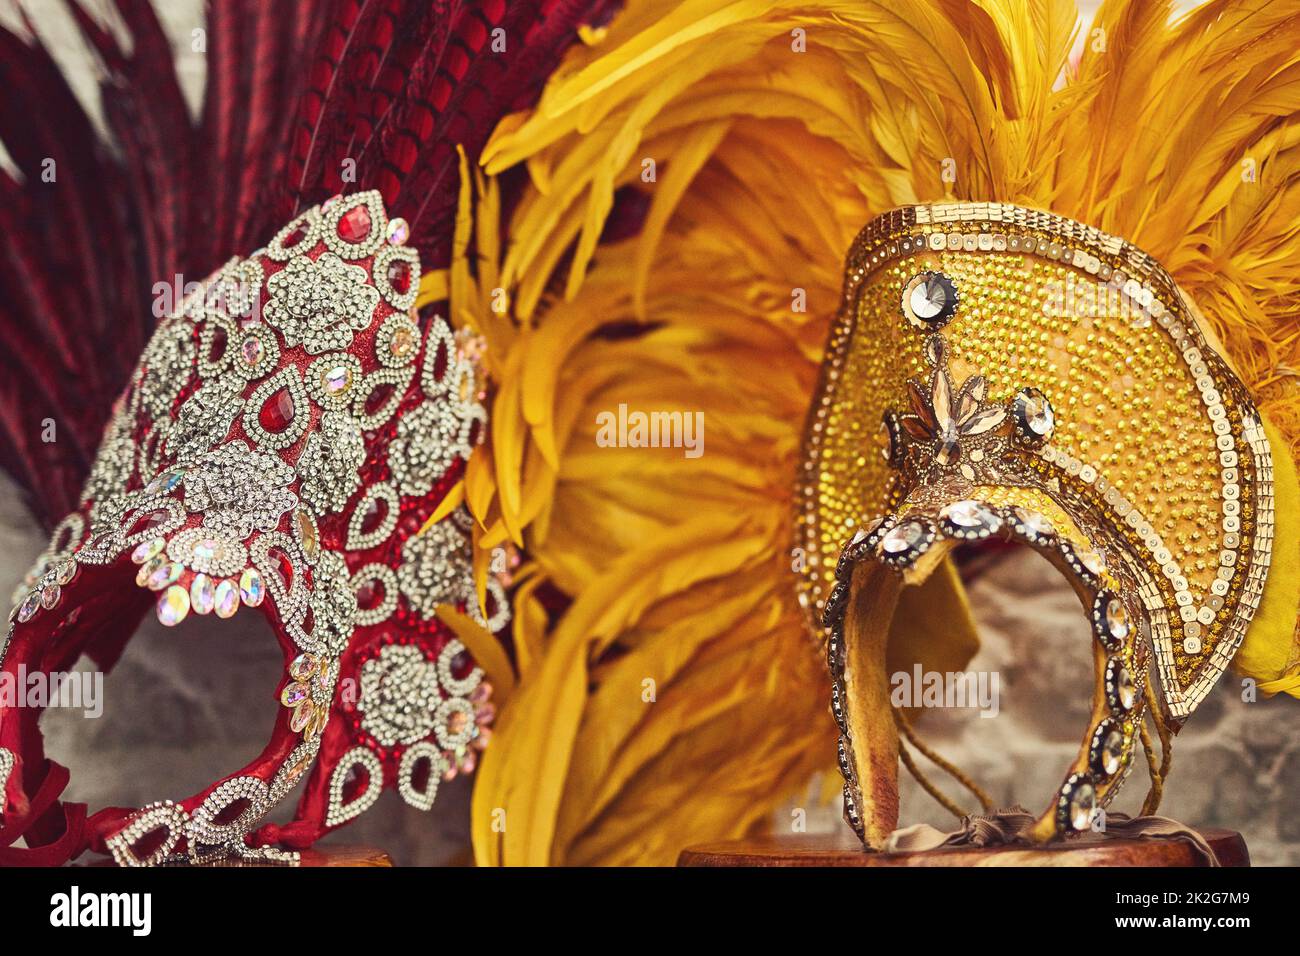 Zeit für etwas Glanz und Glam. Stillleben von Kostüm-Kopfbedeckungen für Samba-Tänzer. Stockfoto